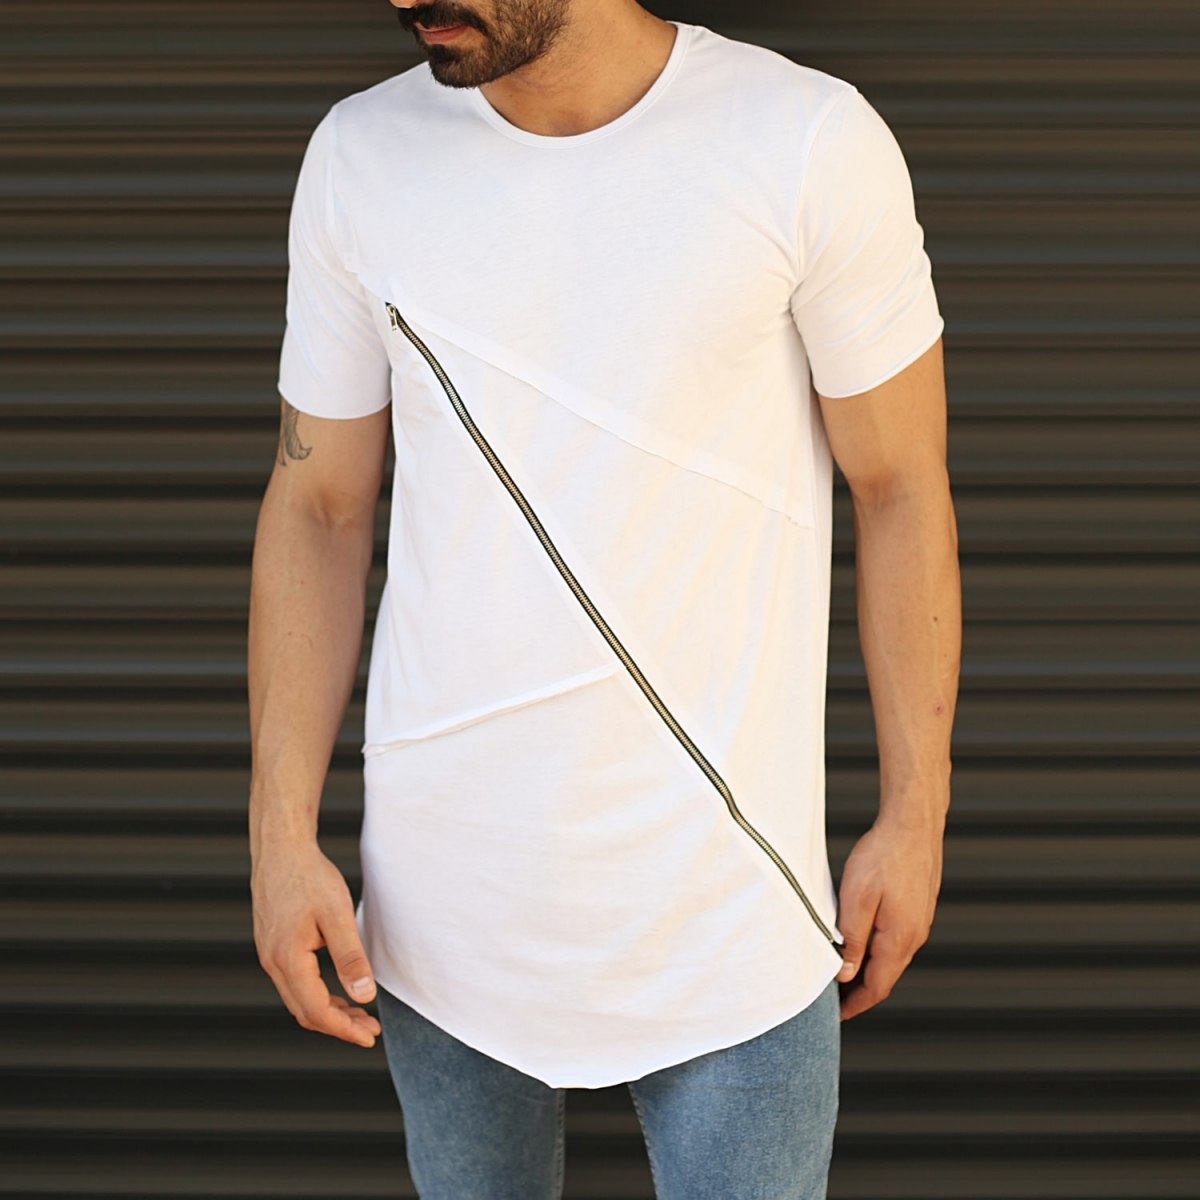 Men's Fitted Cross Zipper Tall T-Shirt White - 1